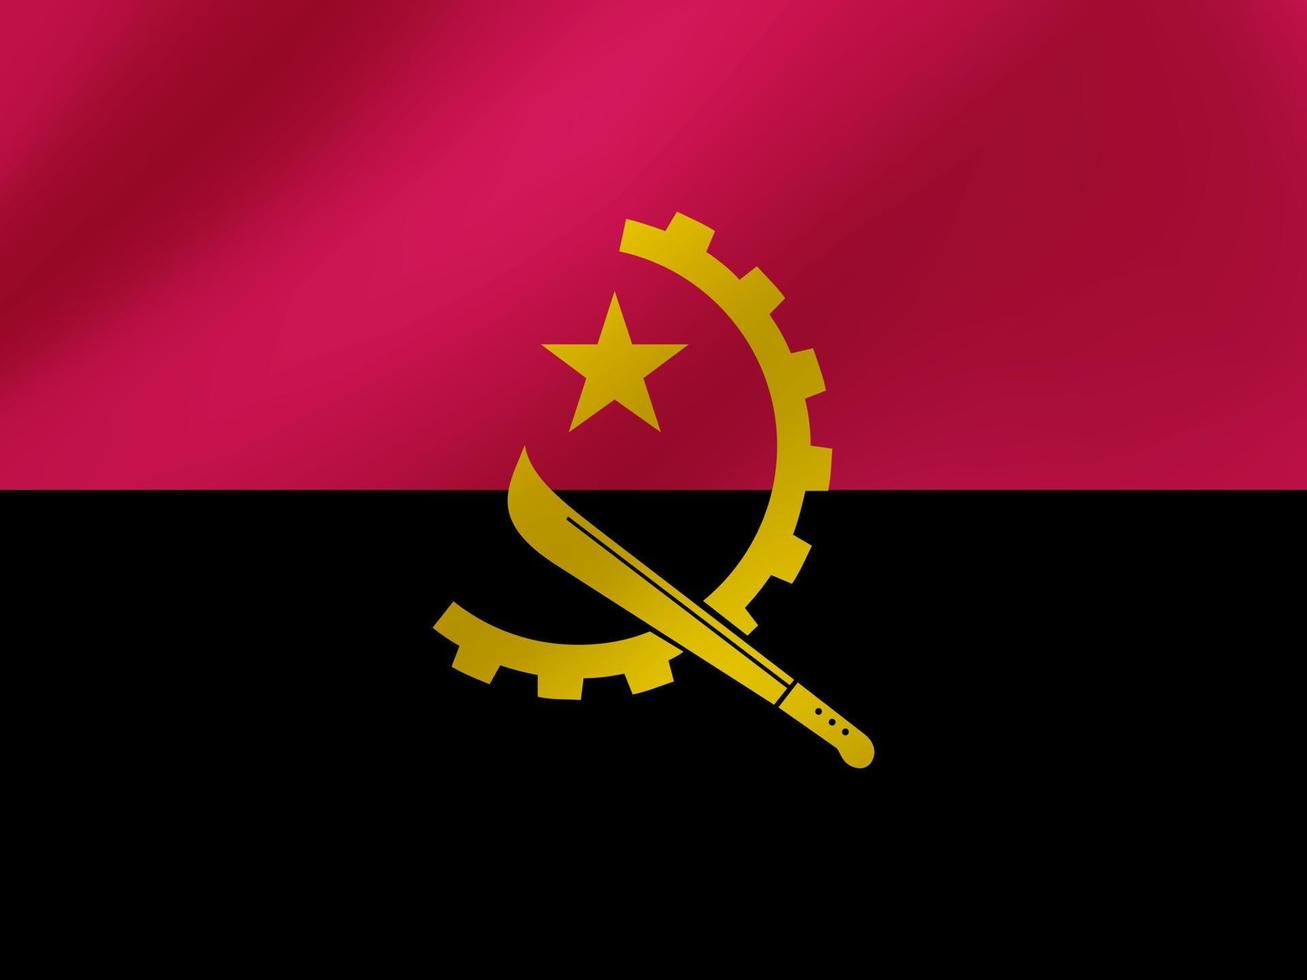 illustrazione ondulata realistica di vettore del design della bandiera dell'Angola